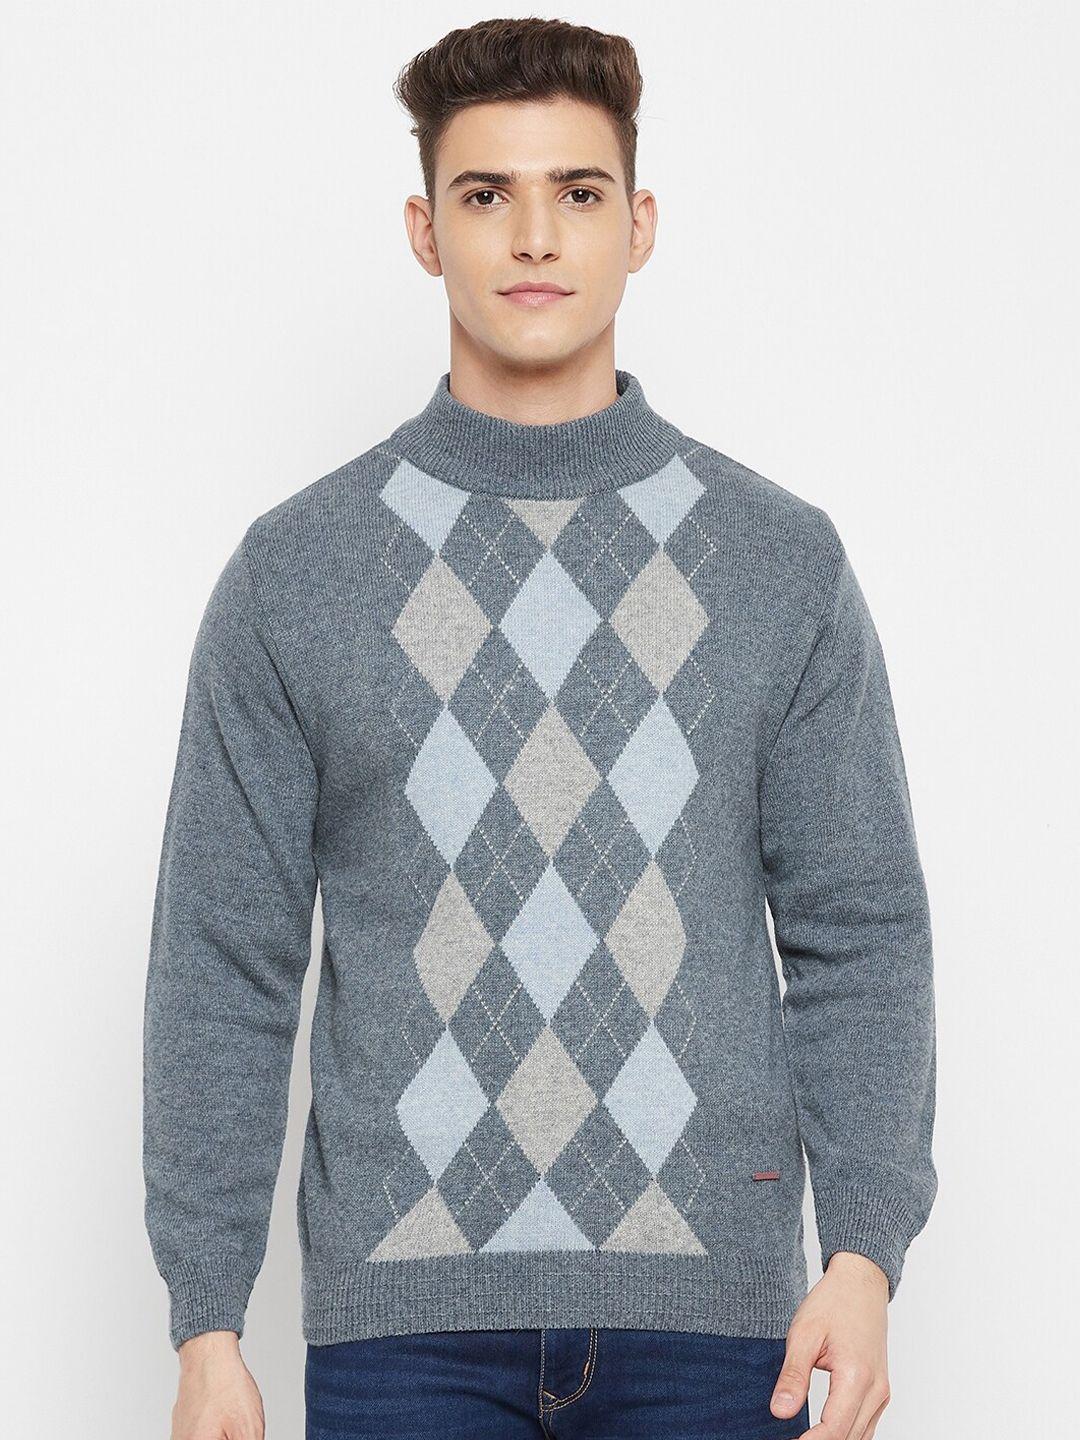 duke-men-grey-fair-isle-printed-pullover